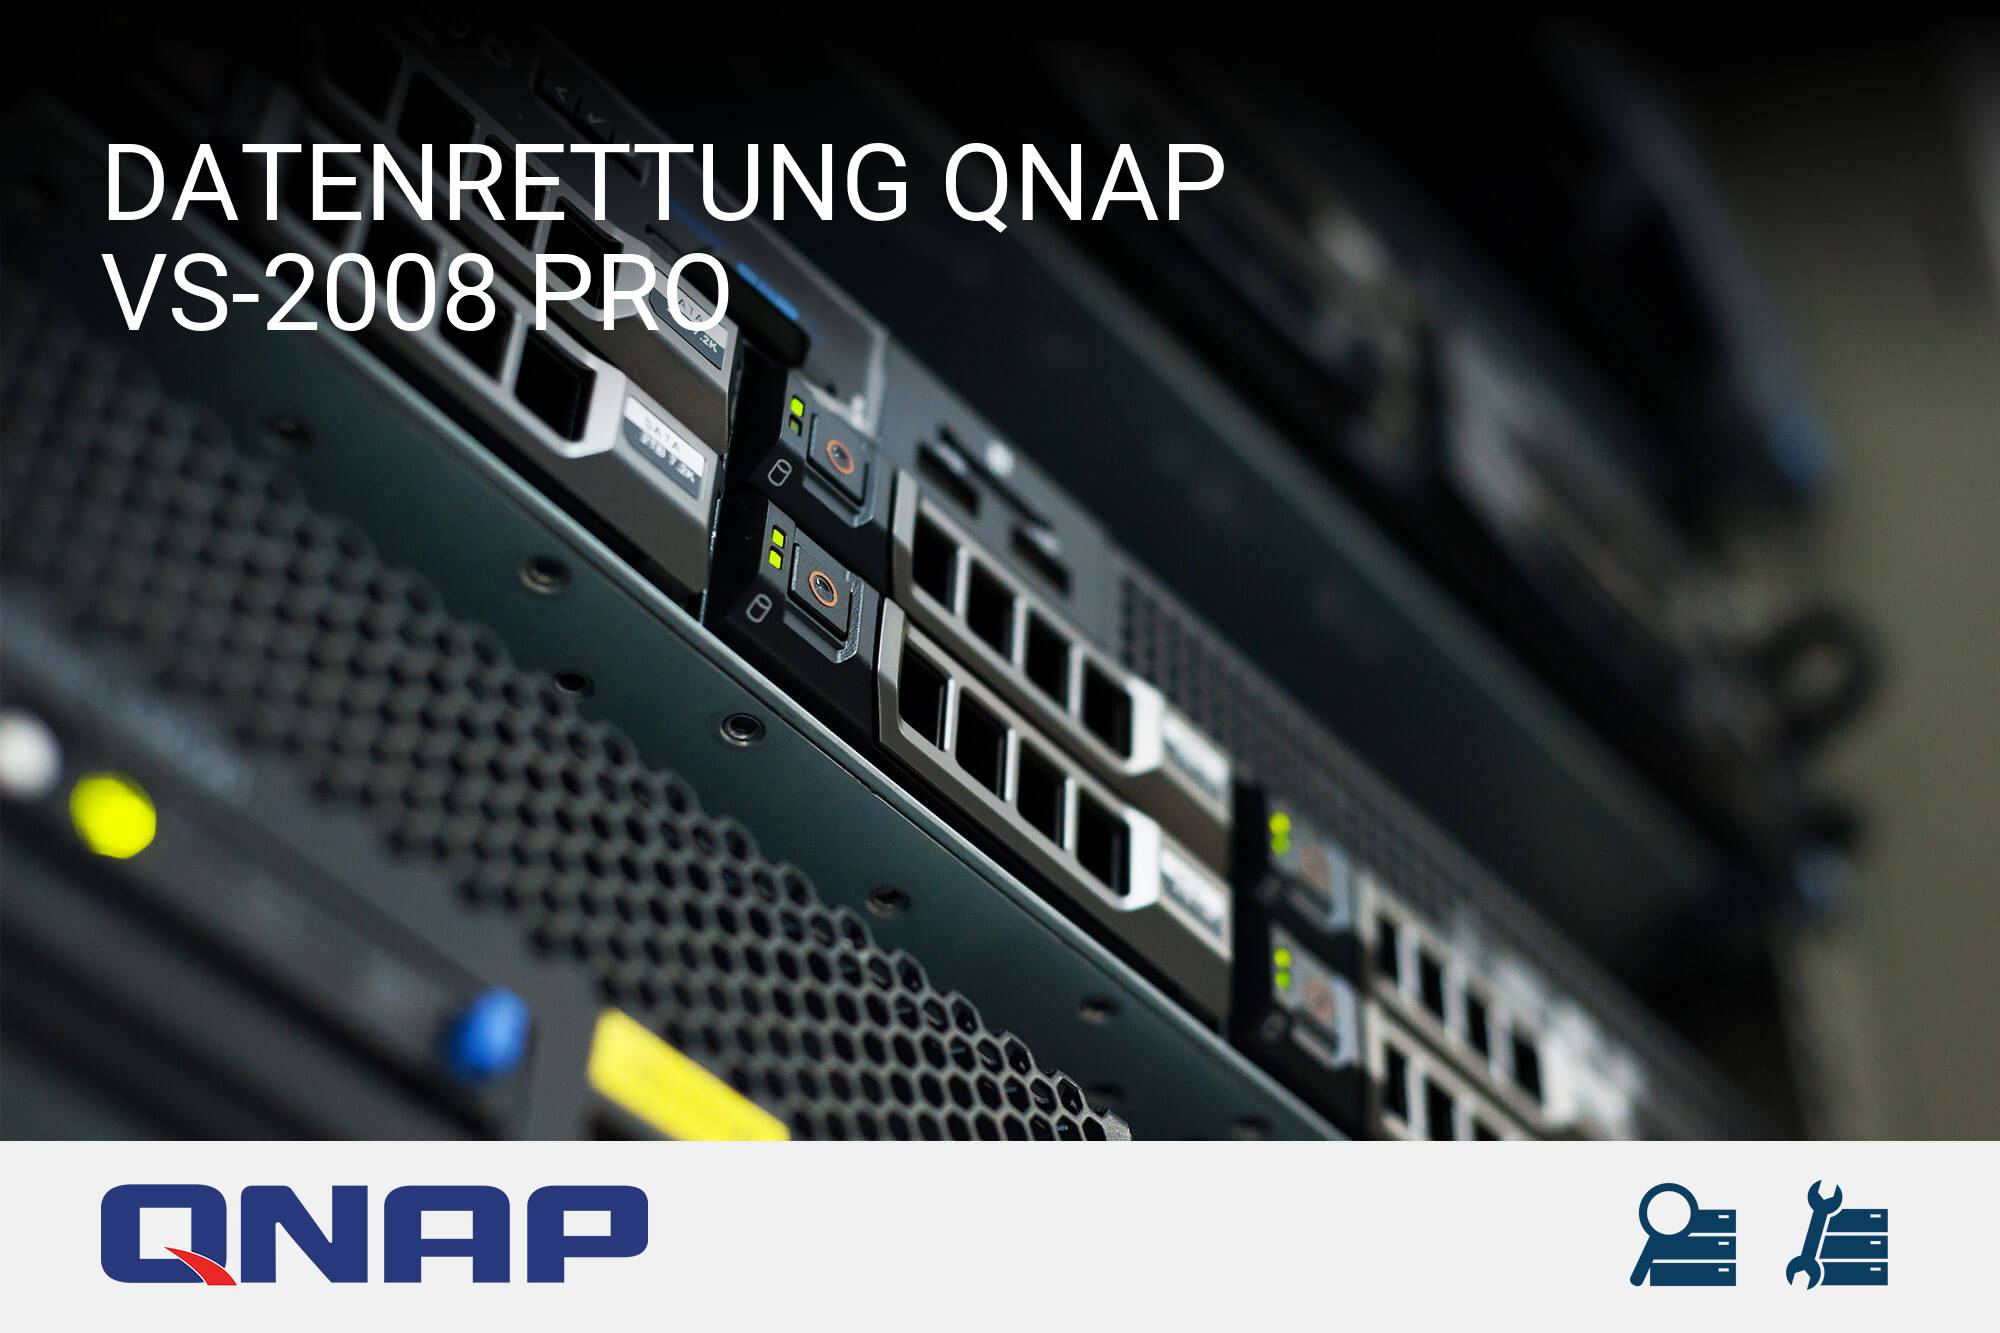 QNAP VS-2008 Pro